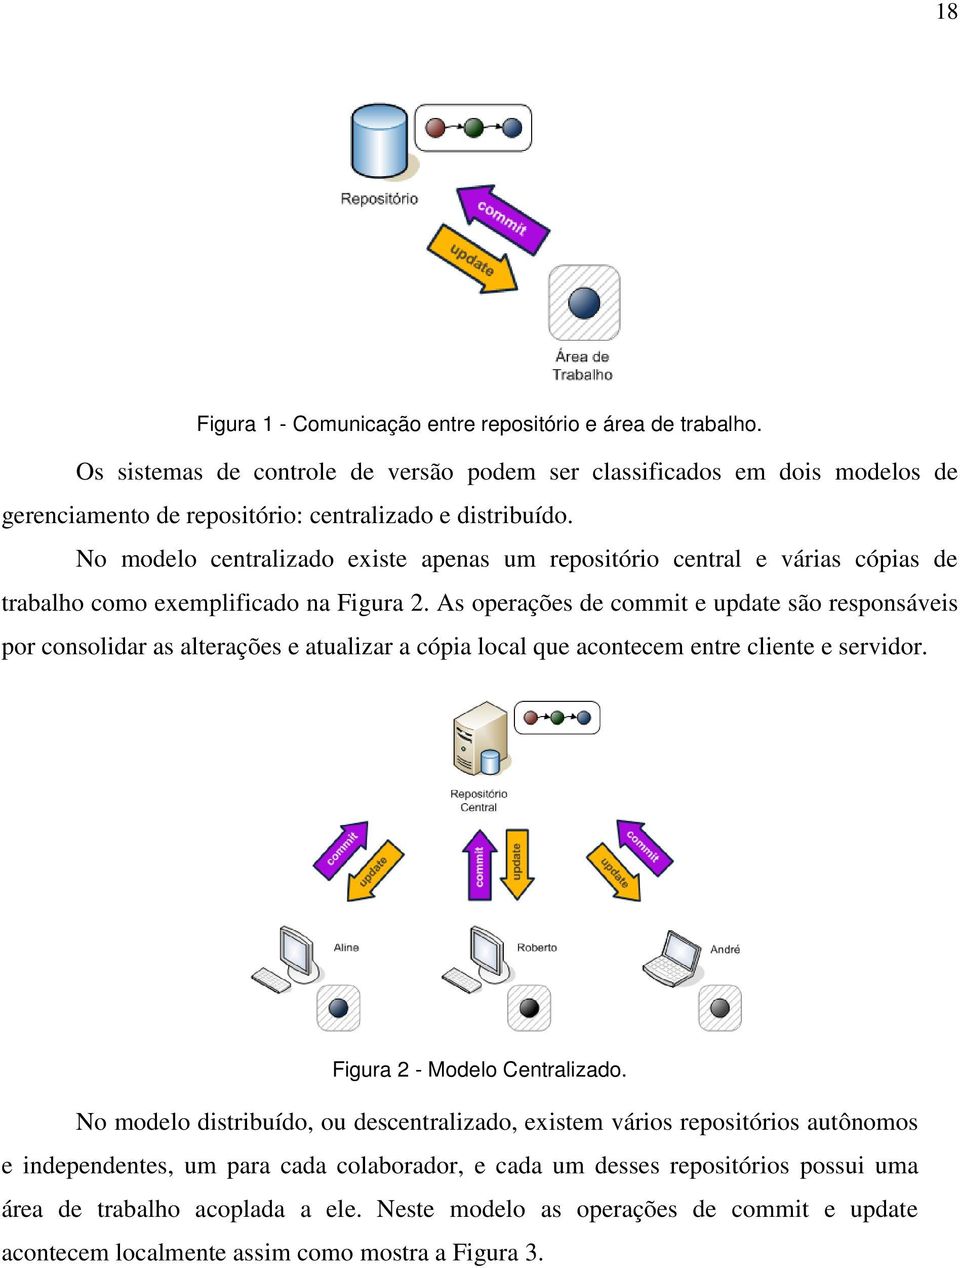 No modelo centralizado existe apenas um repositório central e várias cópias de trabalho como exemplificado na Figura 2.